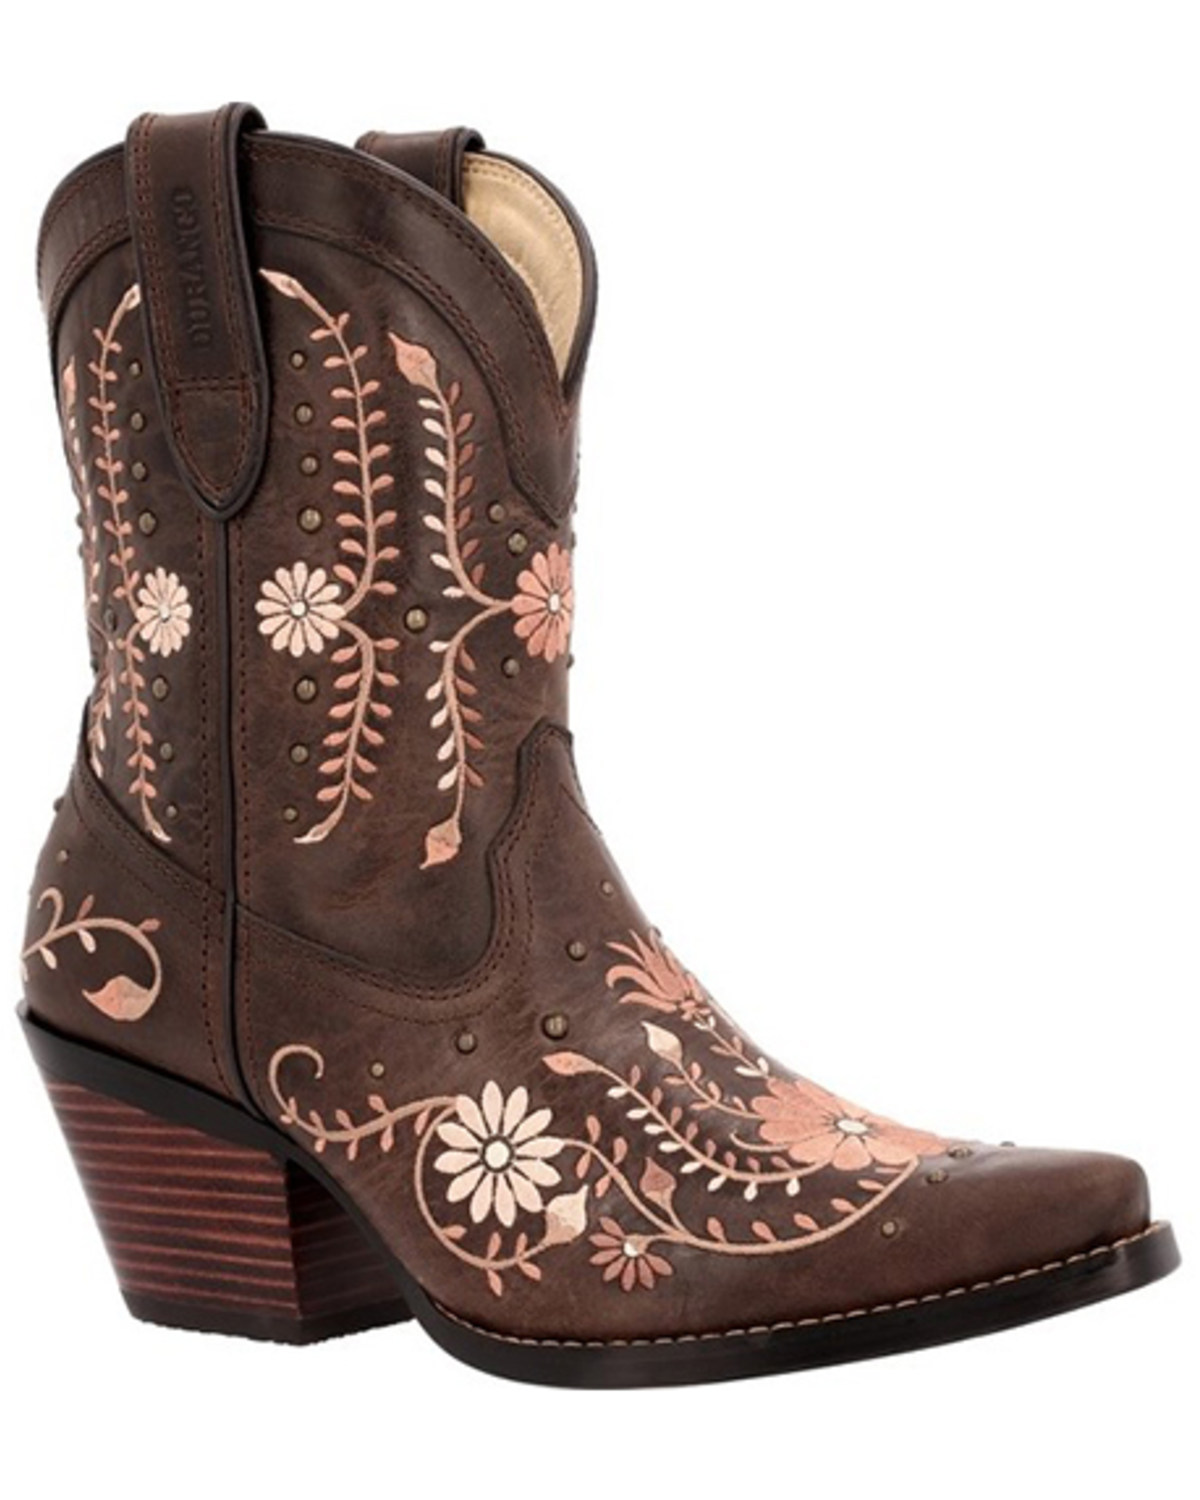 Durango Women's Crush Rose Wildflower Western Boots - Snip Toe